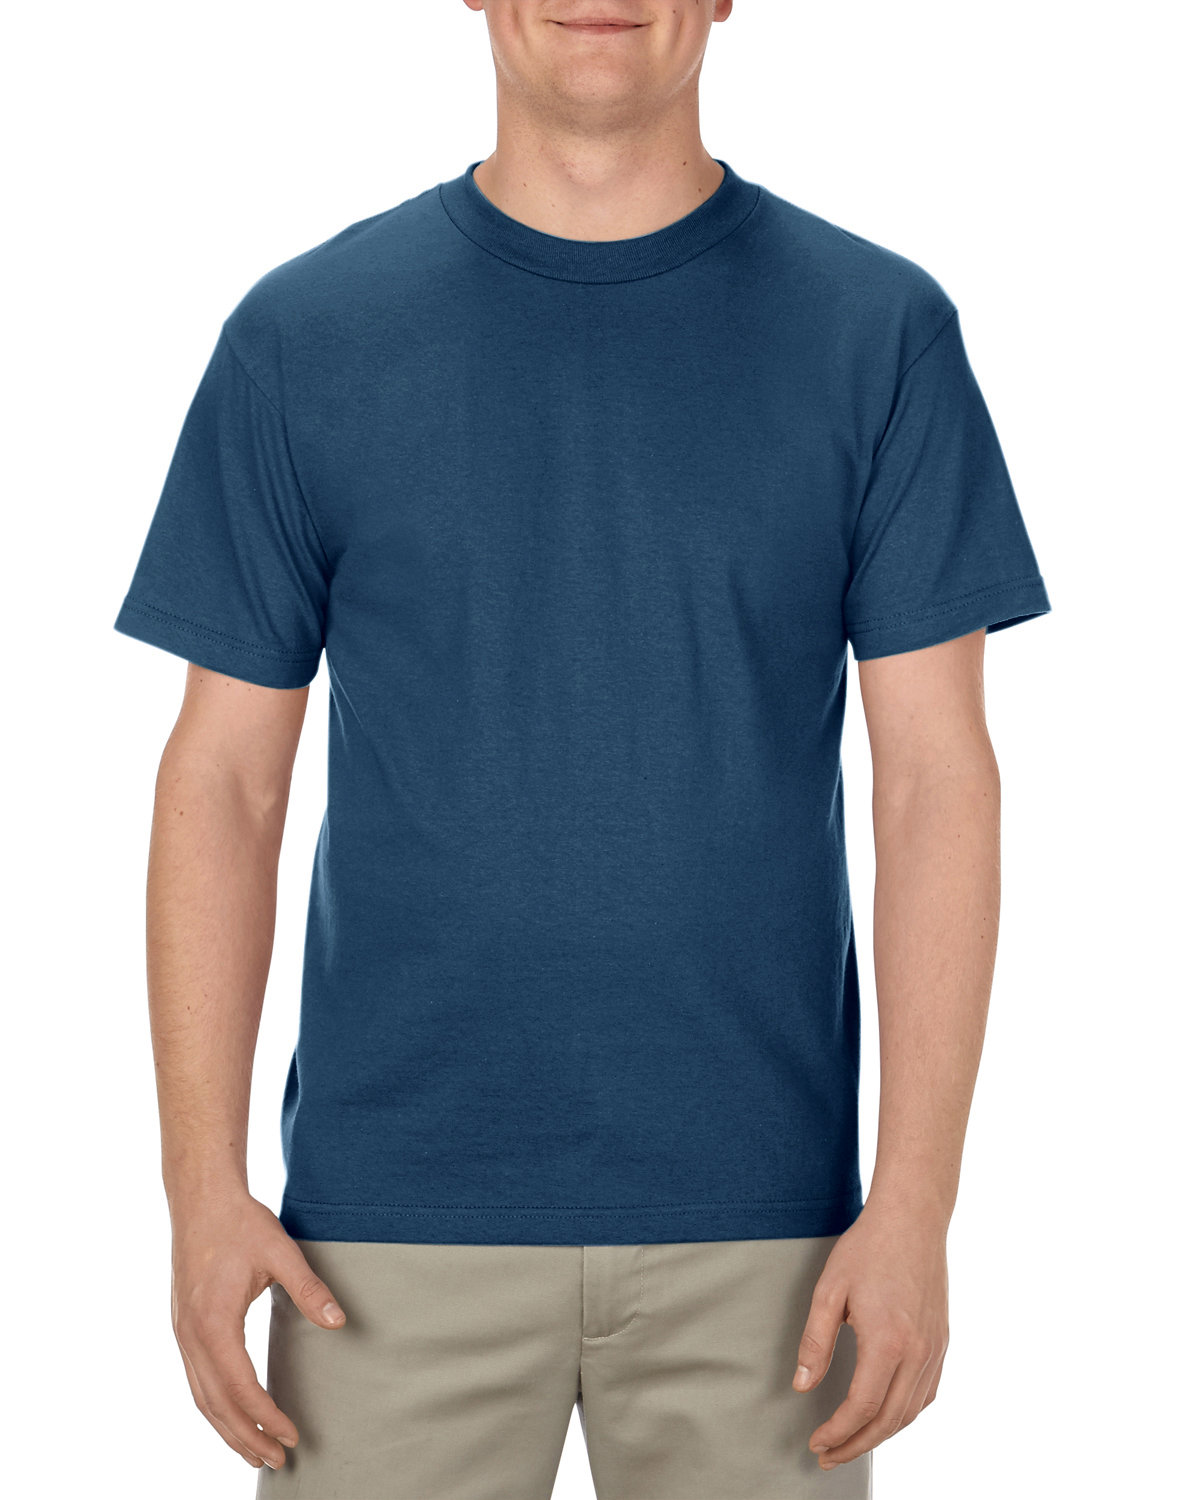 Alstyle Adult 6.0 oz., 100% Cotton T-Shirt HARBOR BLUE 